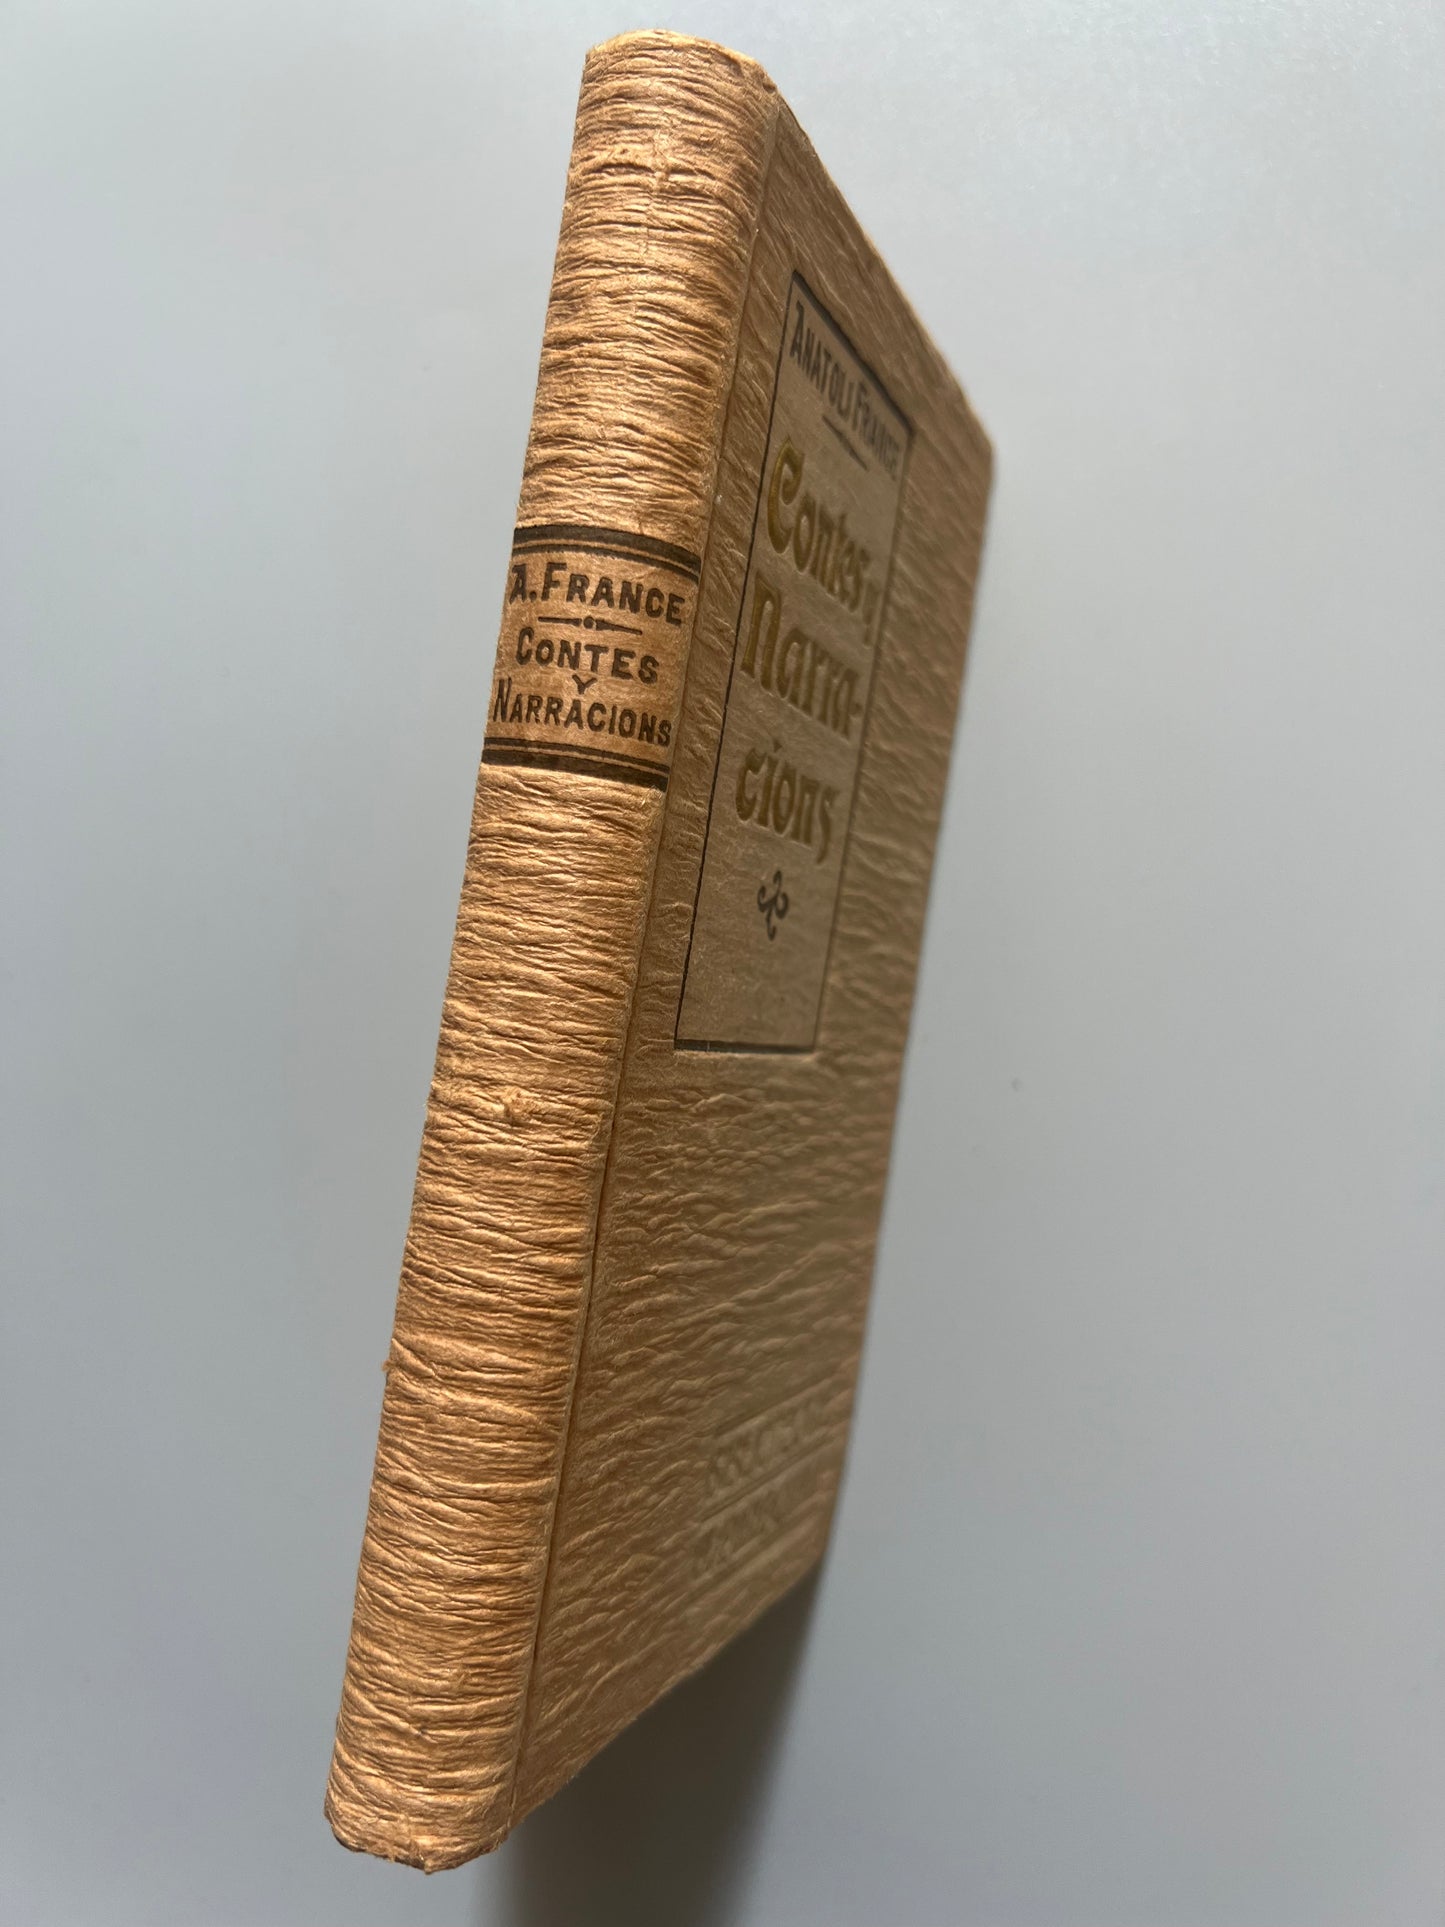 Contes y narracions, Anatoli France - Biblioteca d'El Poble Catalá, 1907